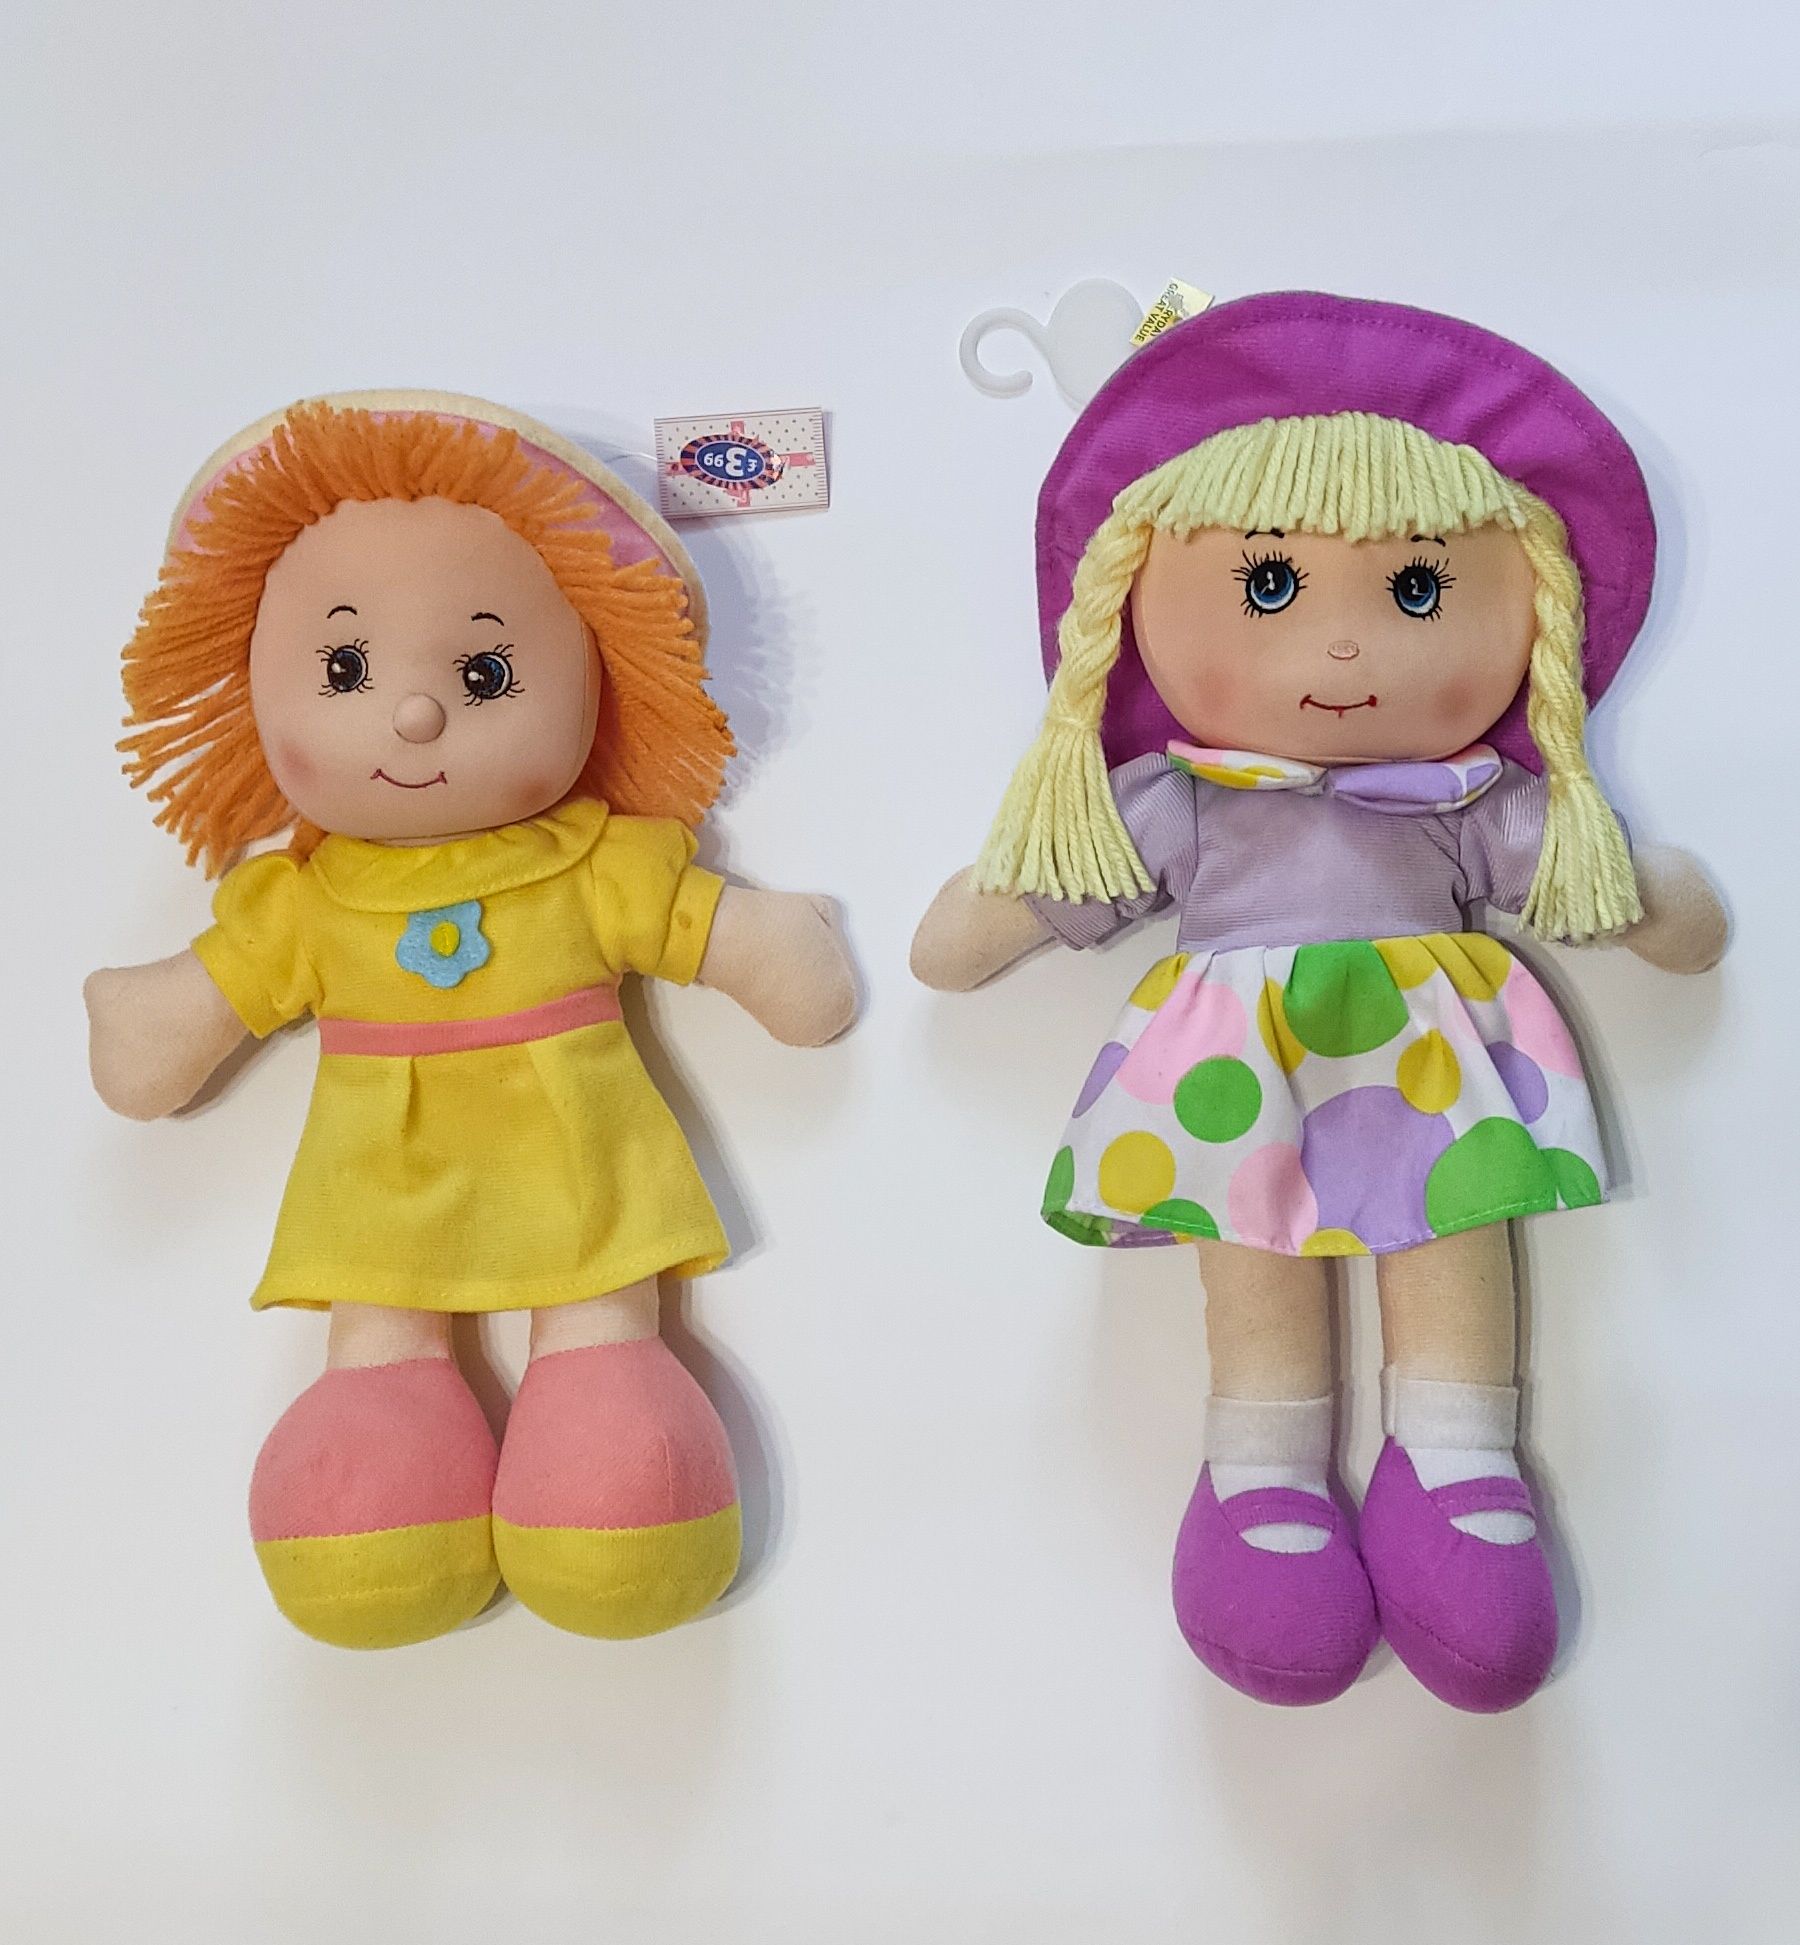 Ляльки м'які для дівчаток гарні яскраві, нові.